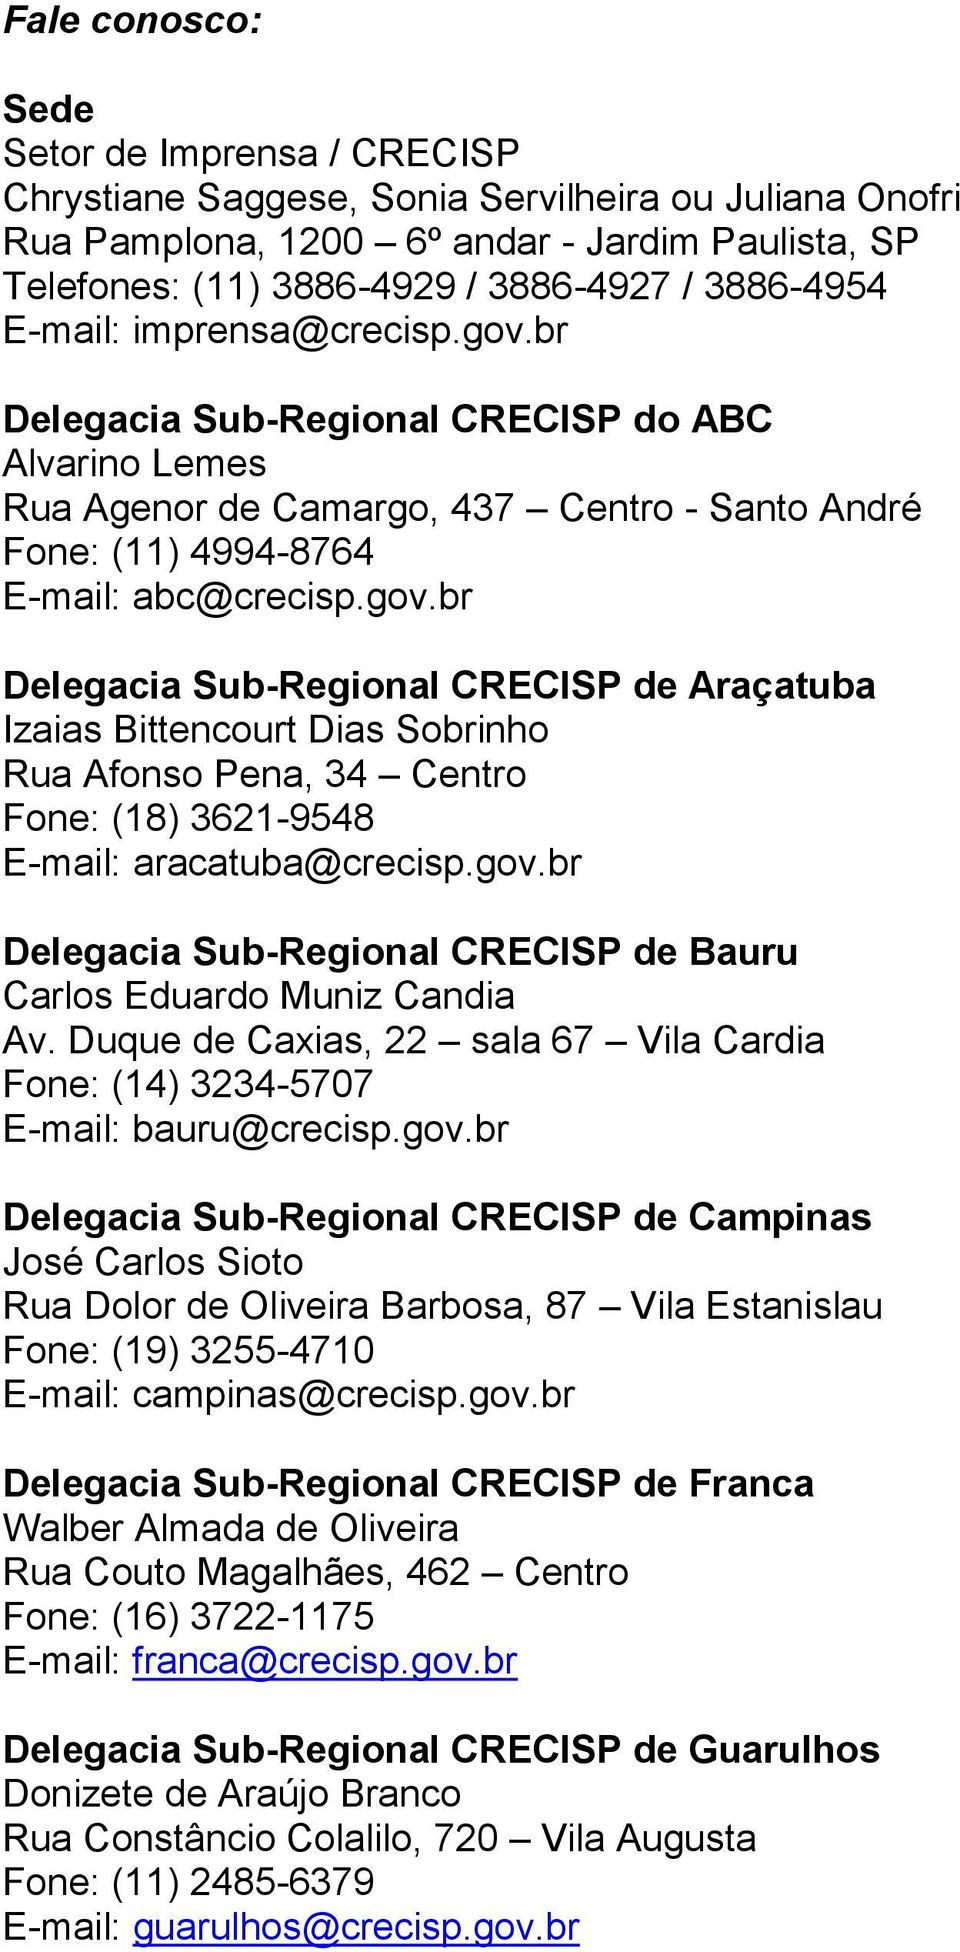 gov.br Delegacia Sub-Regional CRECISP de Bauru Carlos Eduardo Muniz Candia Av. Duque de Caxias, 22 sala 67 Vila Cardia Fone: (14) 3234-5707 E-mail: bauru@crecisp.gov.br Delegacia Sub-Regional CRECISP de Campinas José Carlos Sioto Rua Dolor de Oliveira Barbosa, 87 Vila Estanislau Fone: (19) 3255-4710 E-mail: campinas@crecisp.